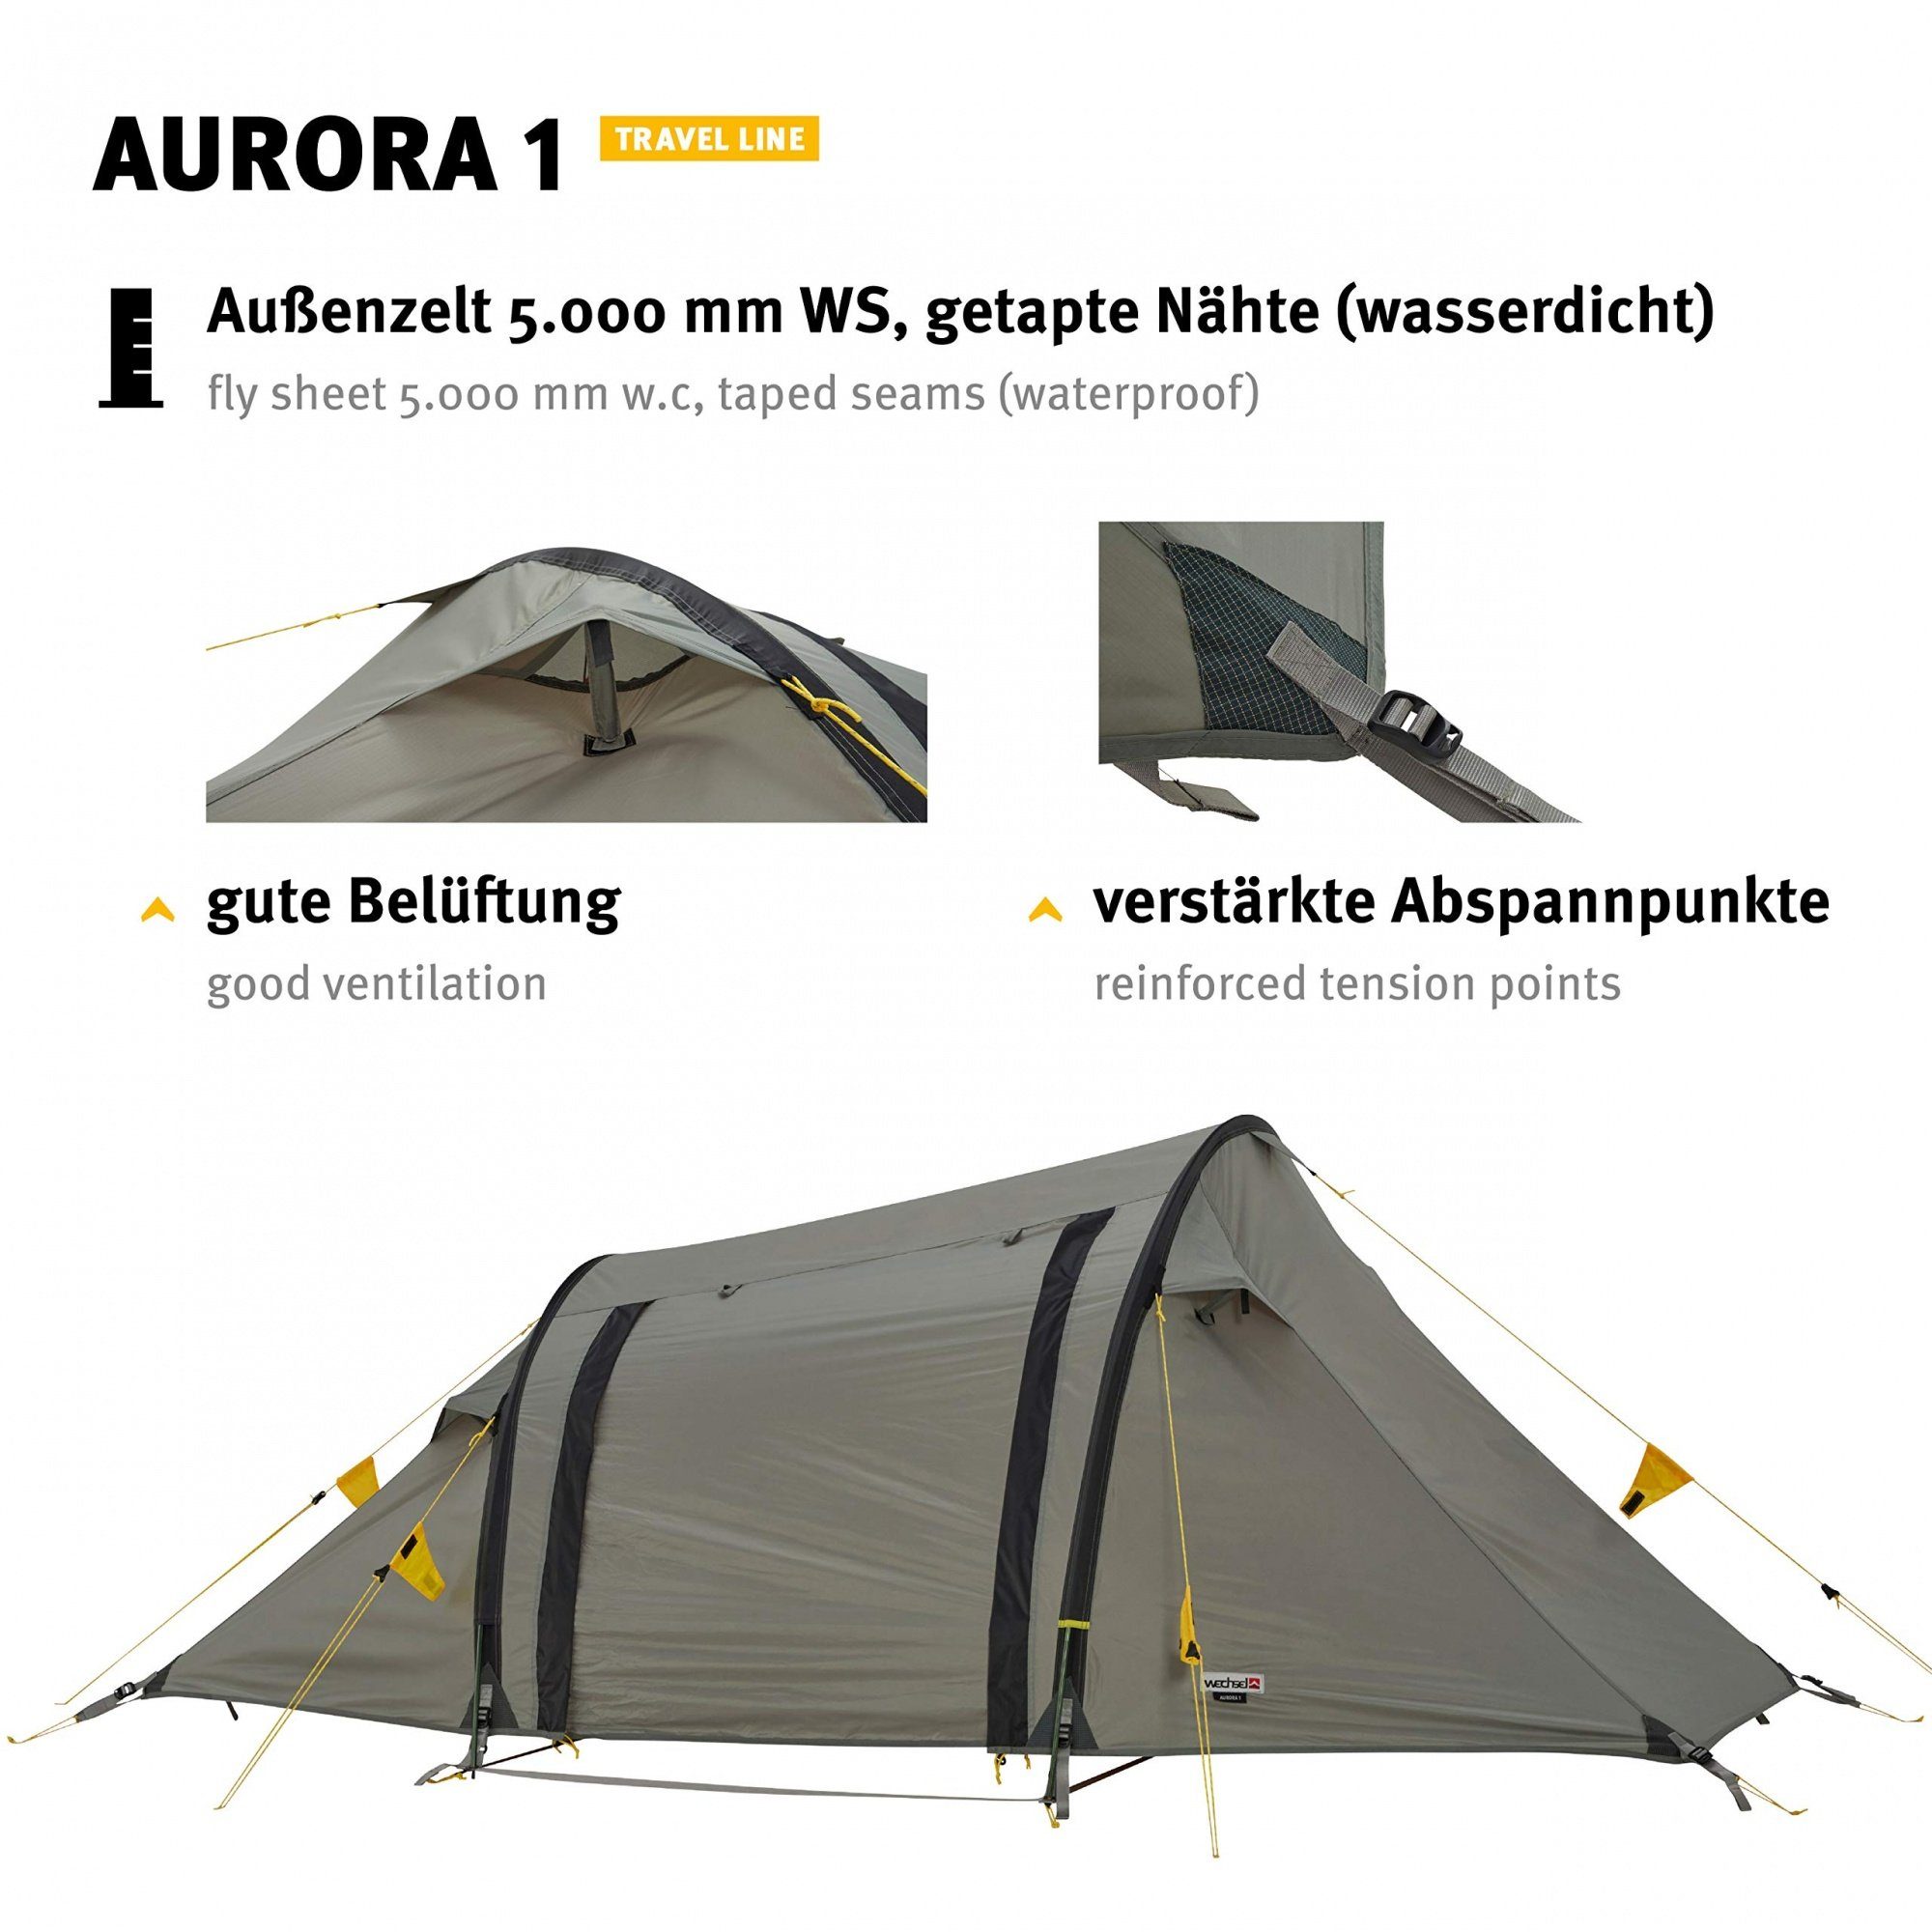 Wechsel Tents Tunnelzelt Aurora 1-Personen-Zelt, Travel Line 1 - 1 Personen: Tunnelzelt 